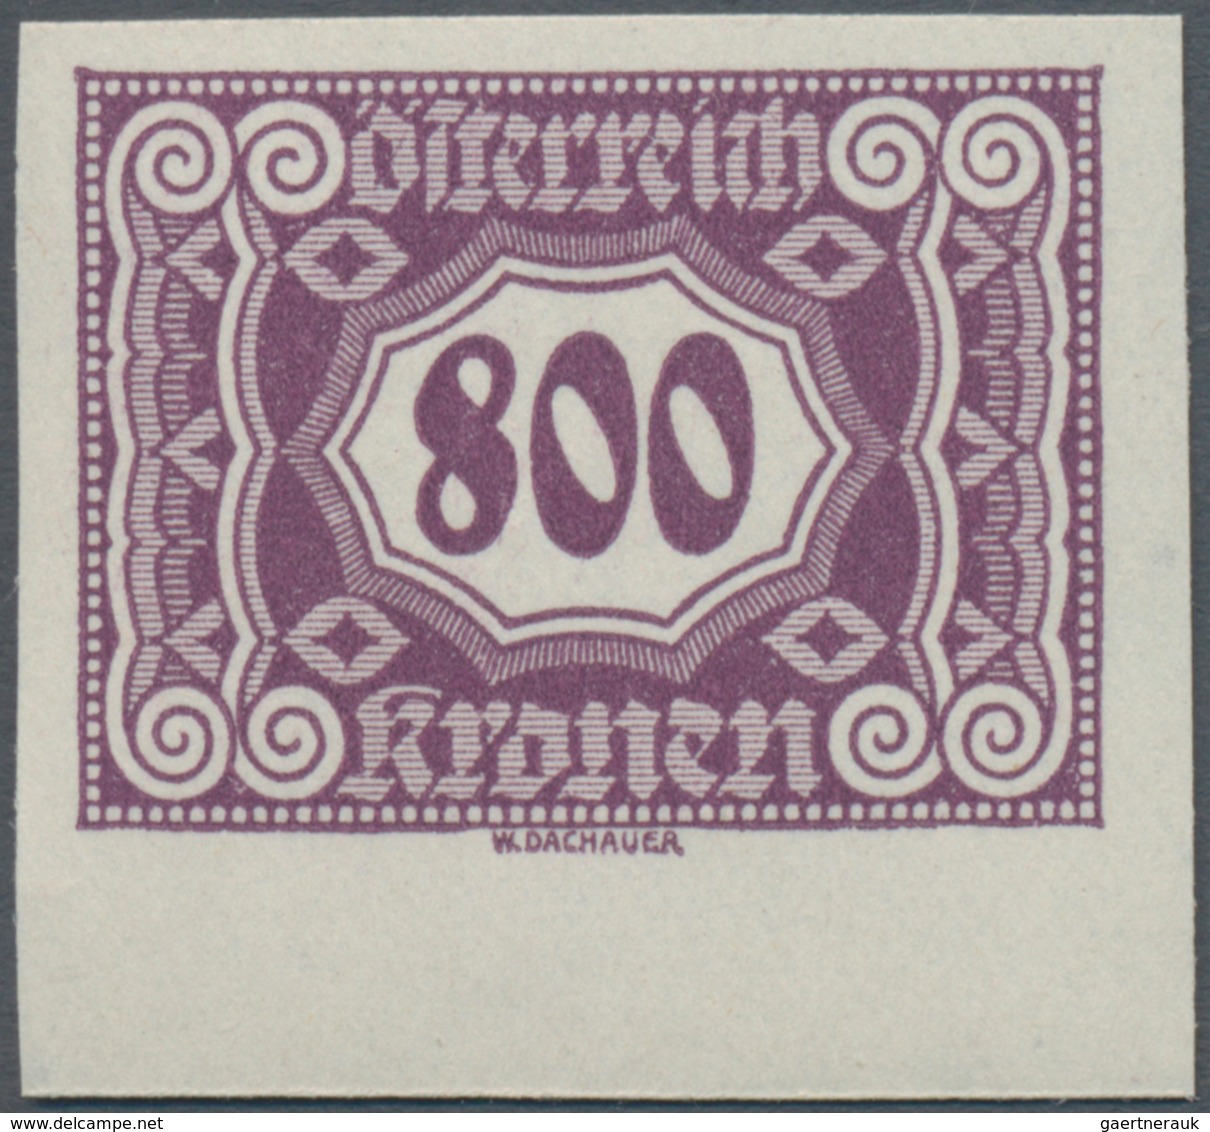 Österreich - Portomarken: 1922/1924, 100 Kr. bis 6000 Kr., komplette Serie von 14 Werten UNGEZÄHNT,